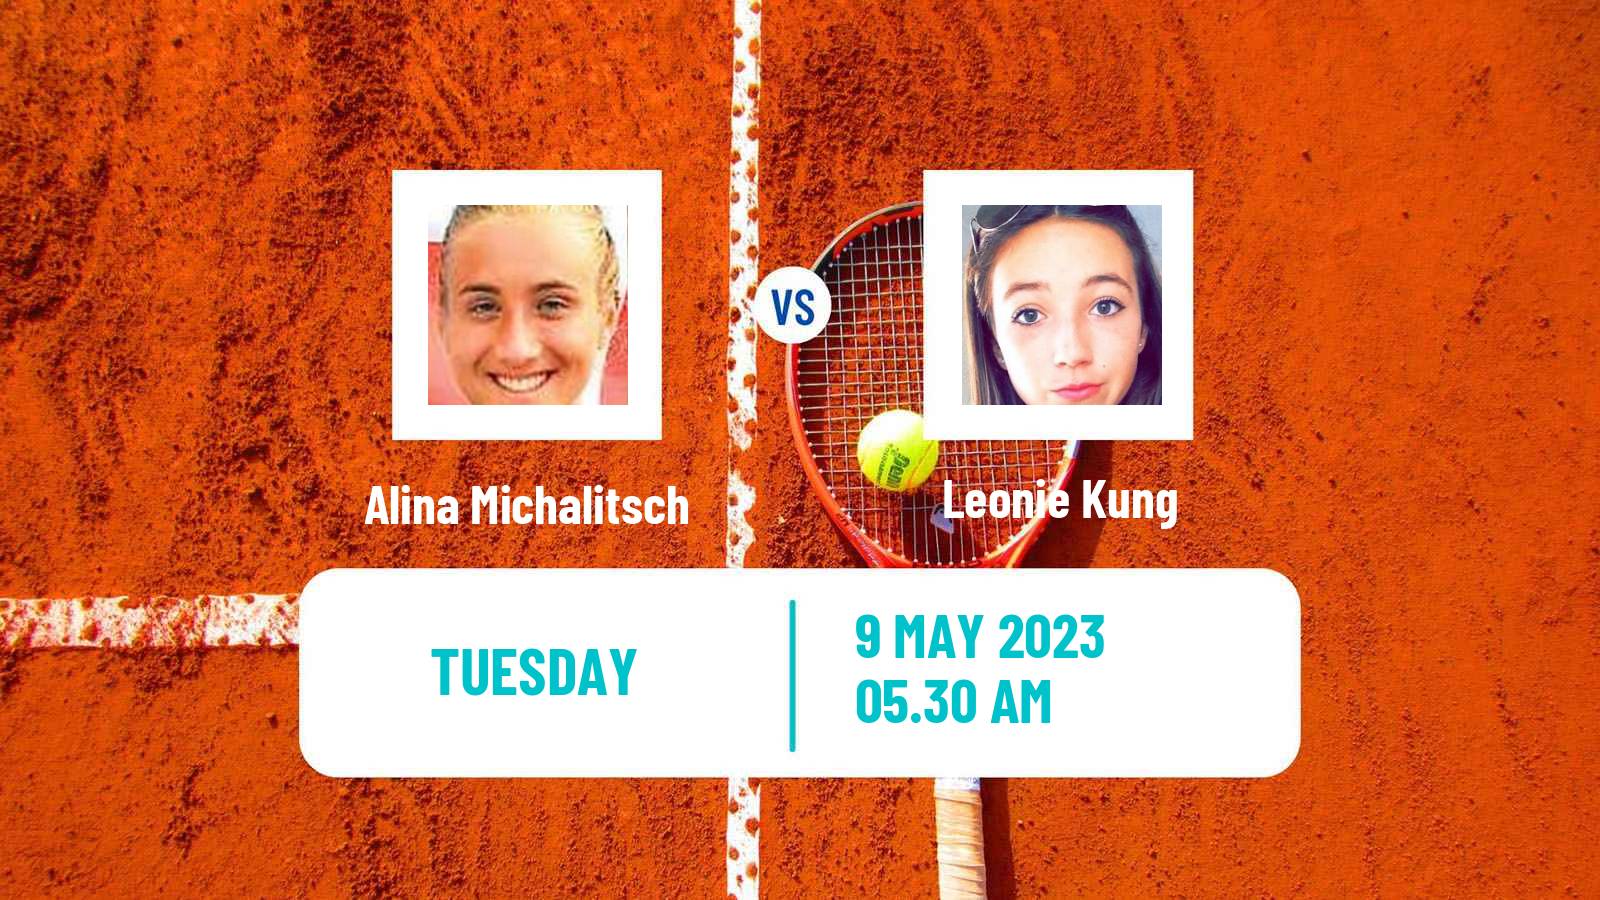 Tennis ITF Tournaments Alina Michalitsch - Leonie Kung